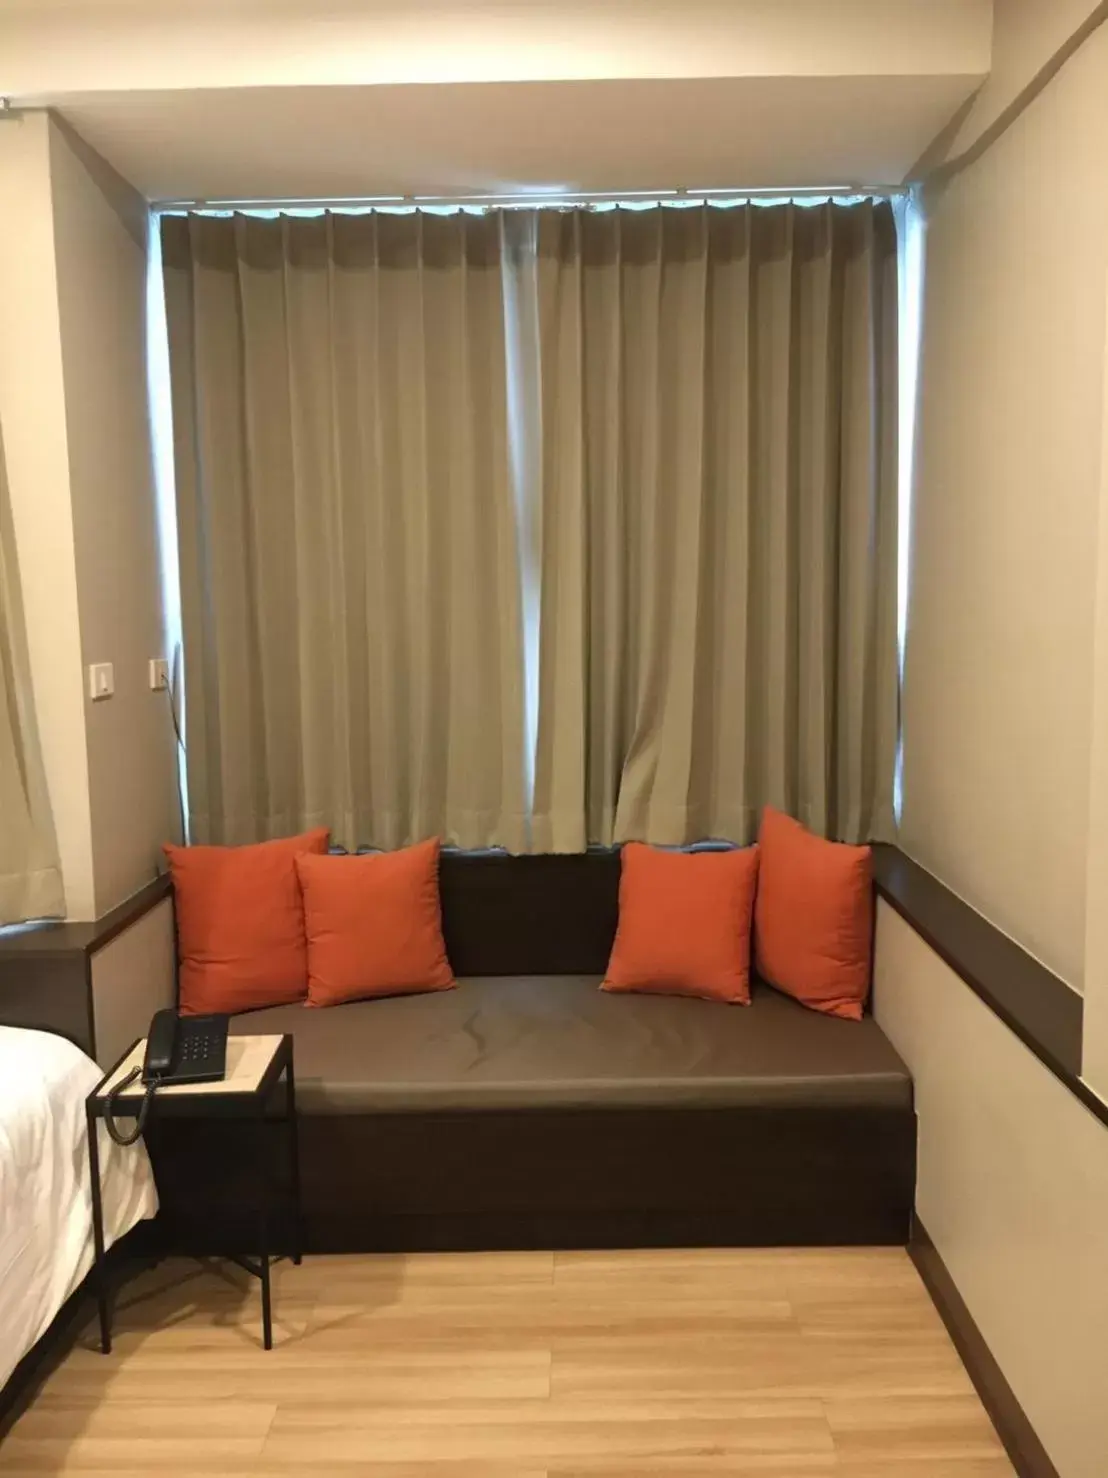 Seating Area in YWCA Hotel Bangkok